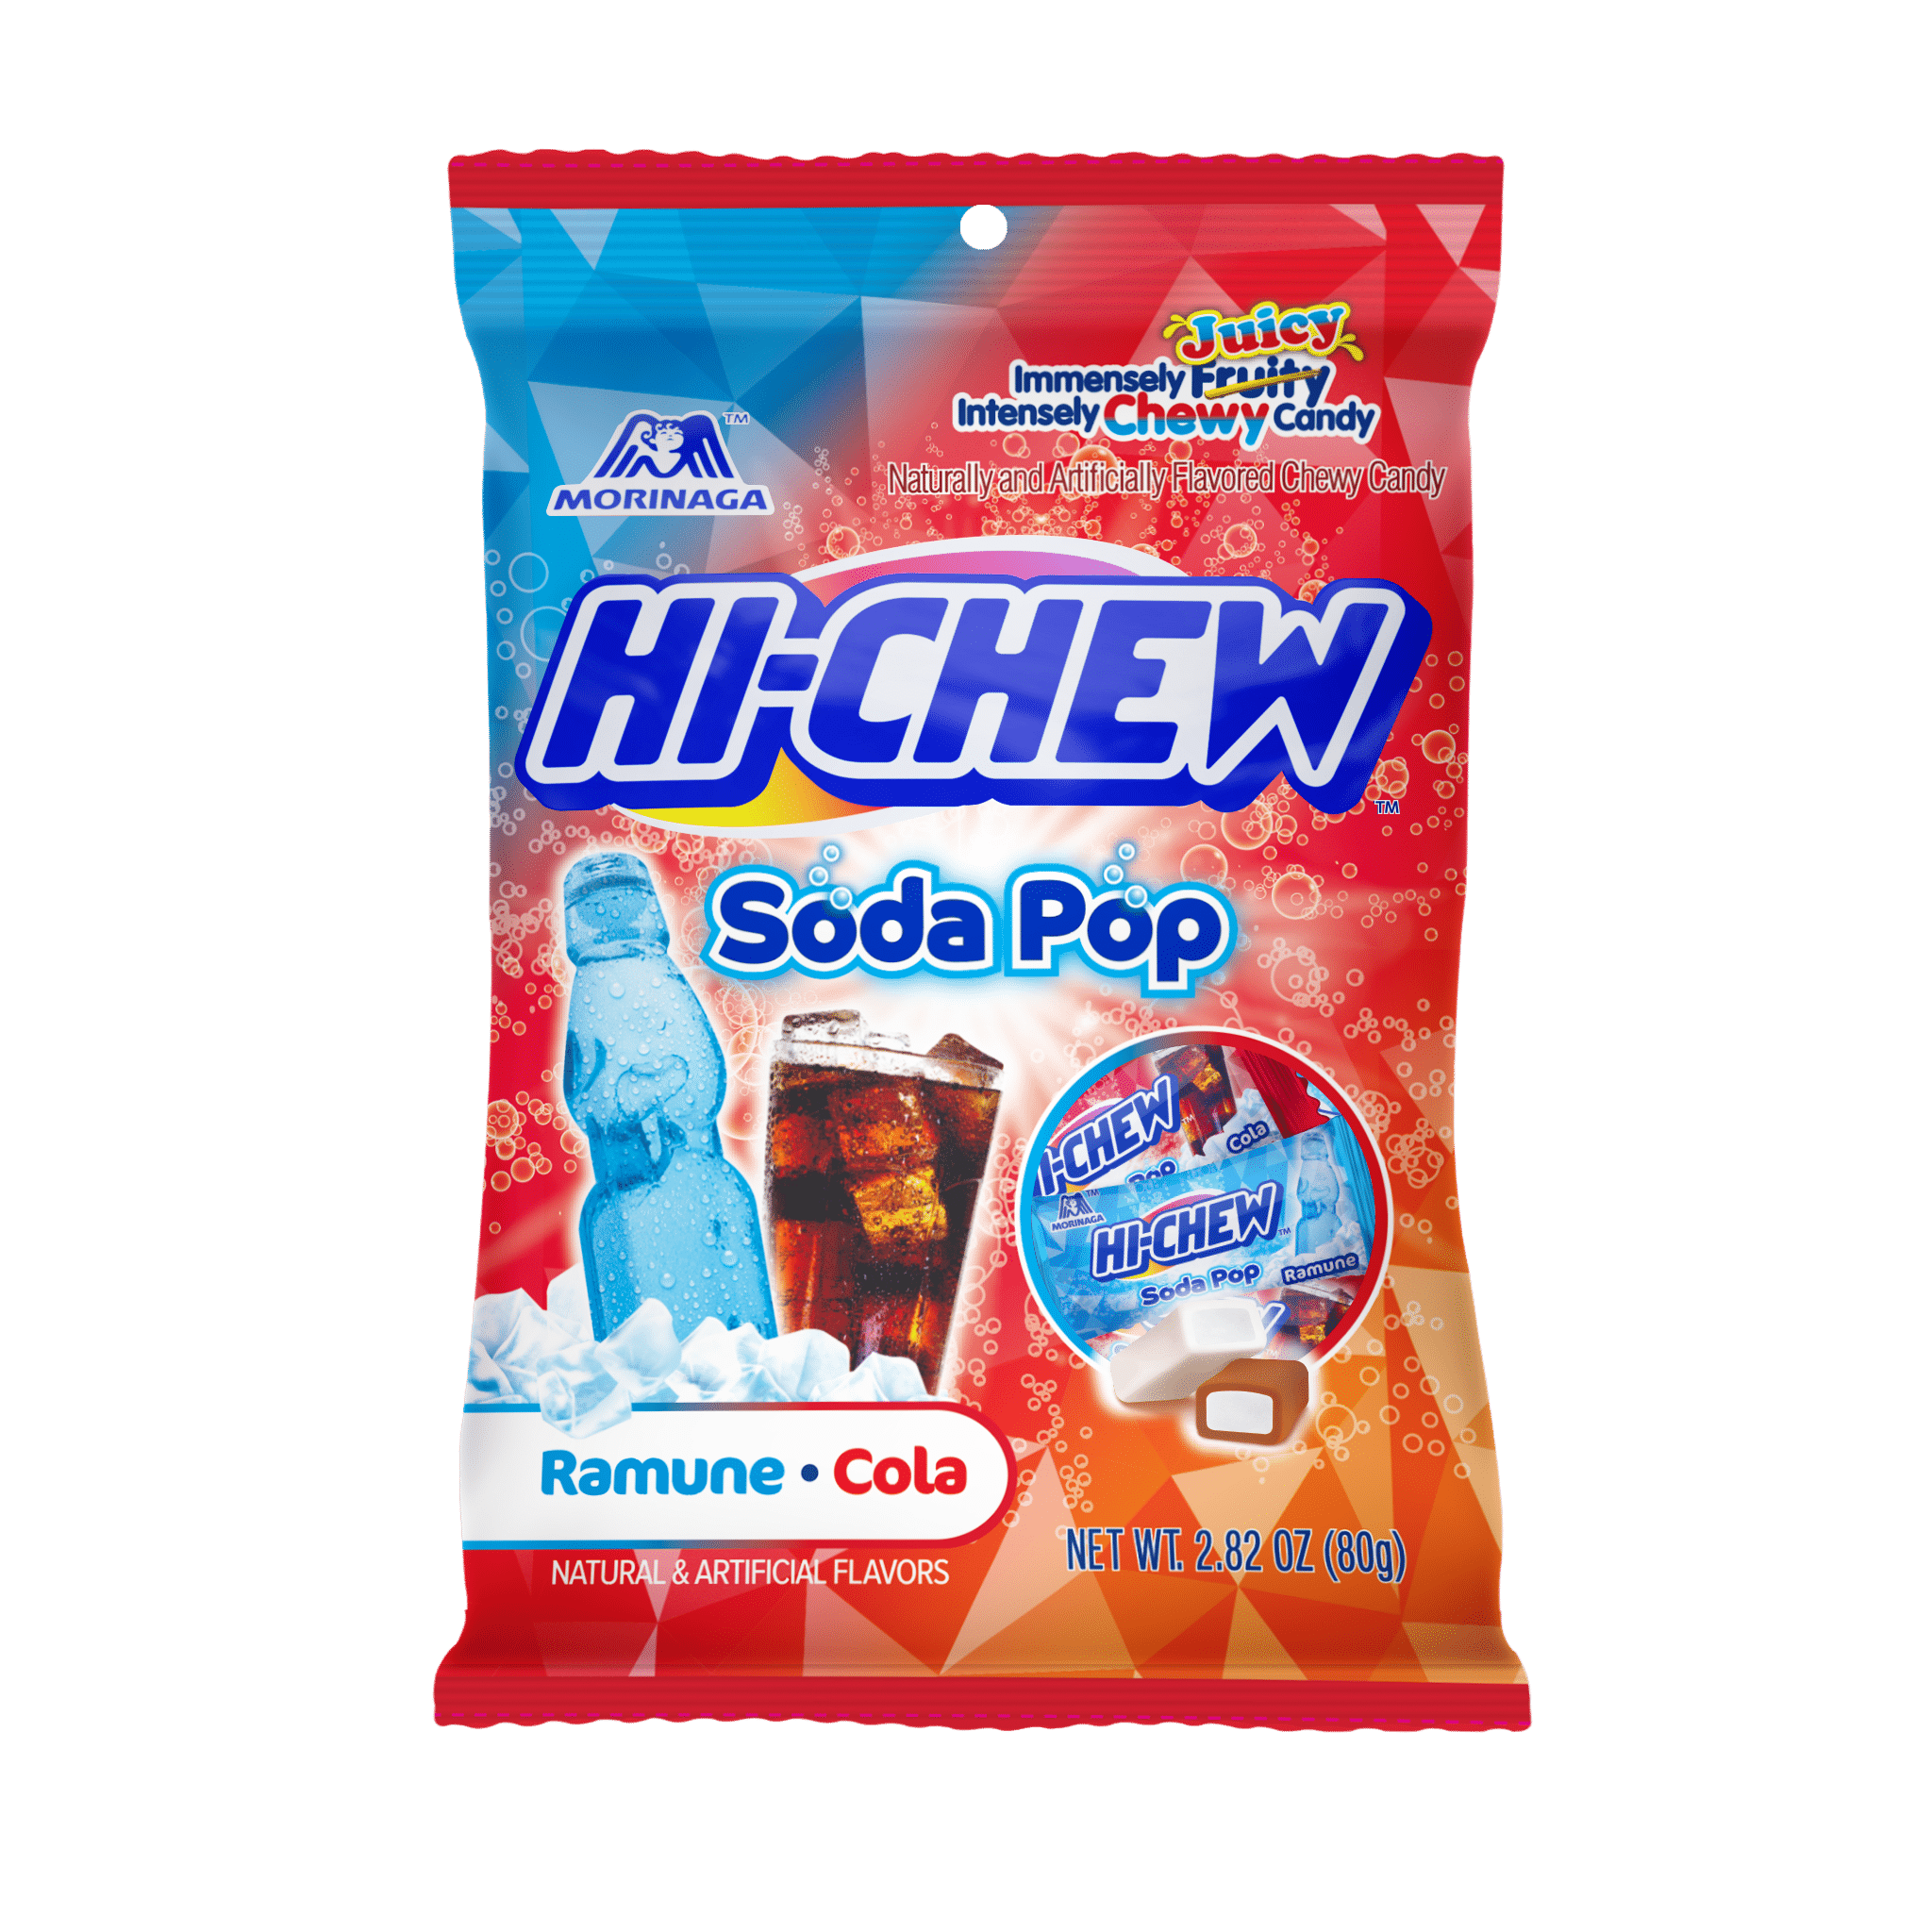 HI-CHEW POP MIX BAG 2.82 (RAMUNE, COLA) – Sweets